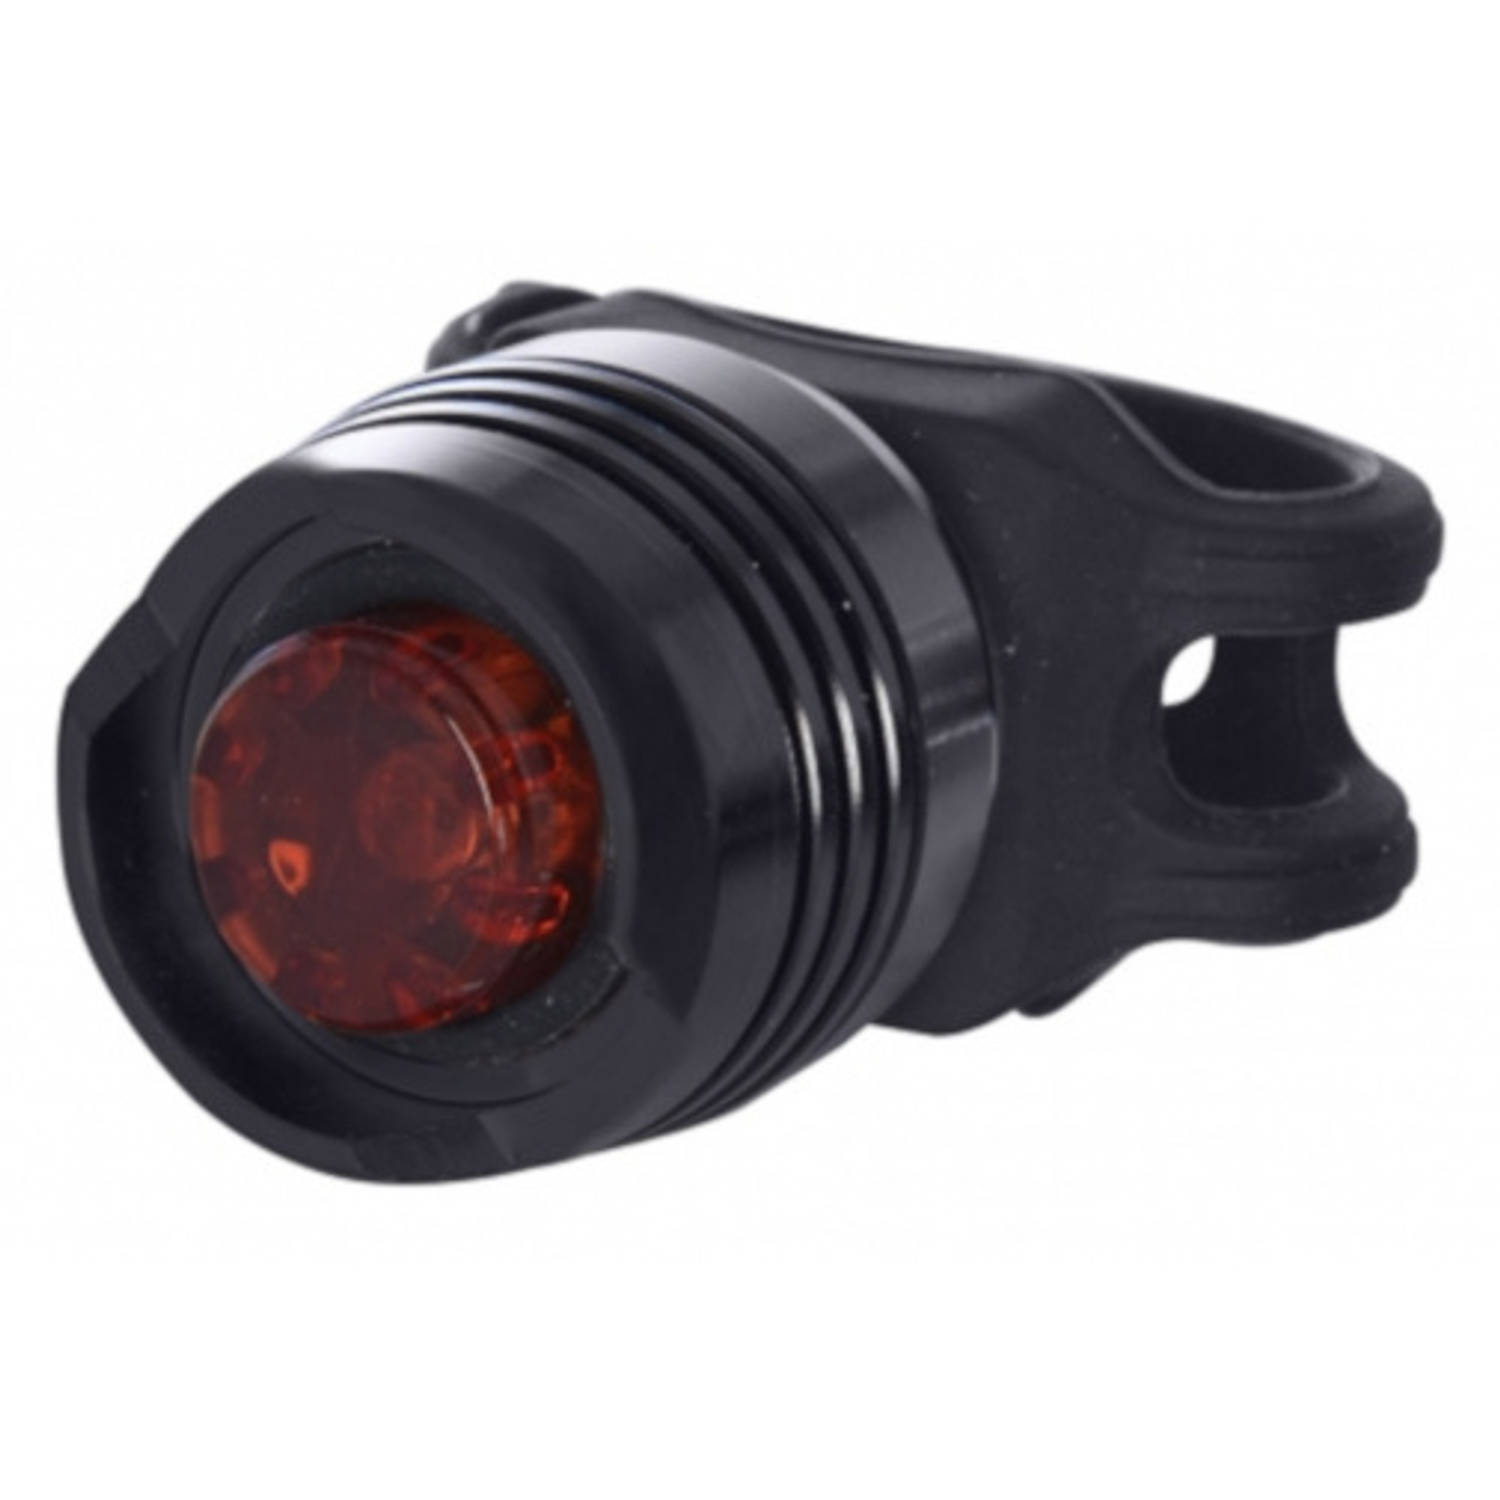 OXC achterlicht Brightspot led 50 Lux rubber zwart/rood